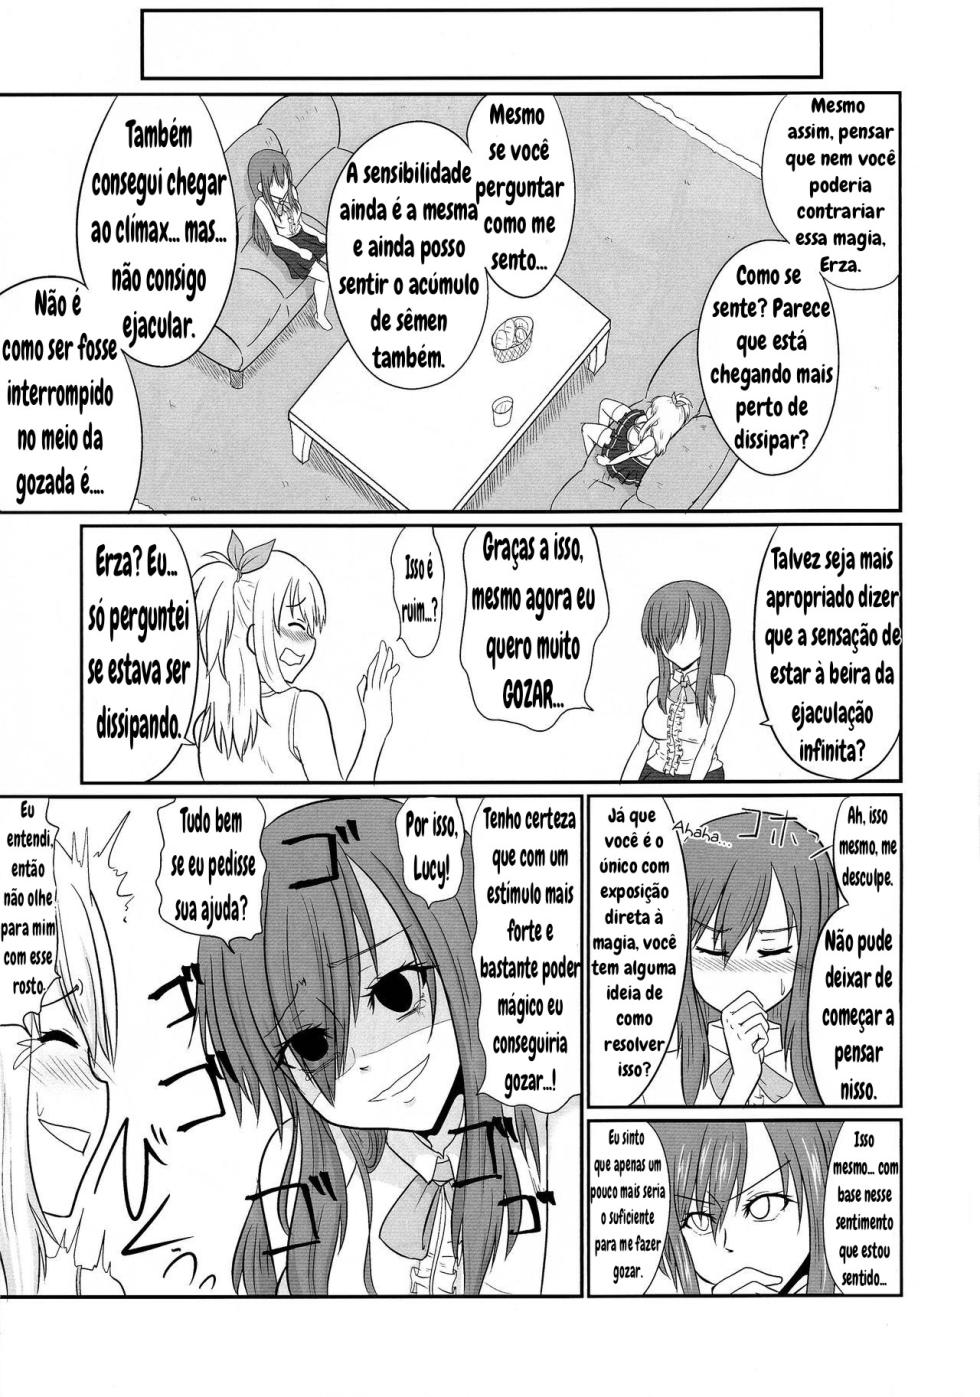 Futana-LINK! 04 (Fairy Tail) - Page 9